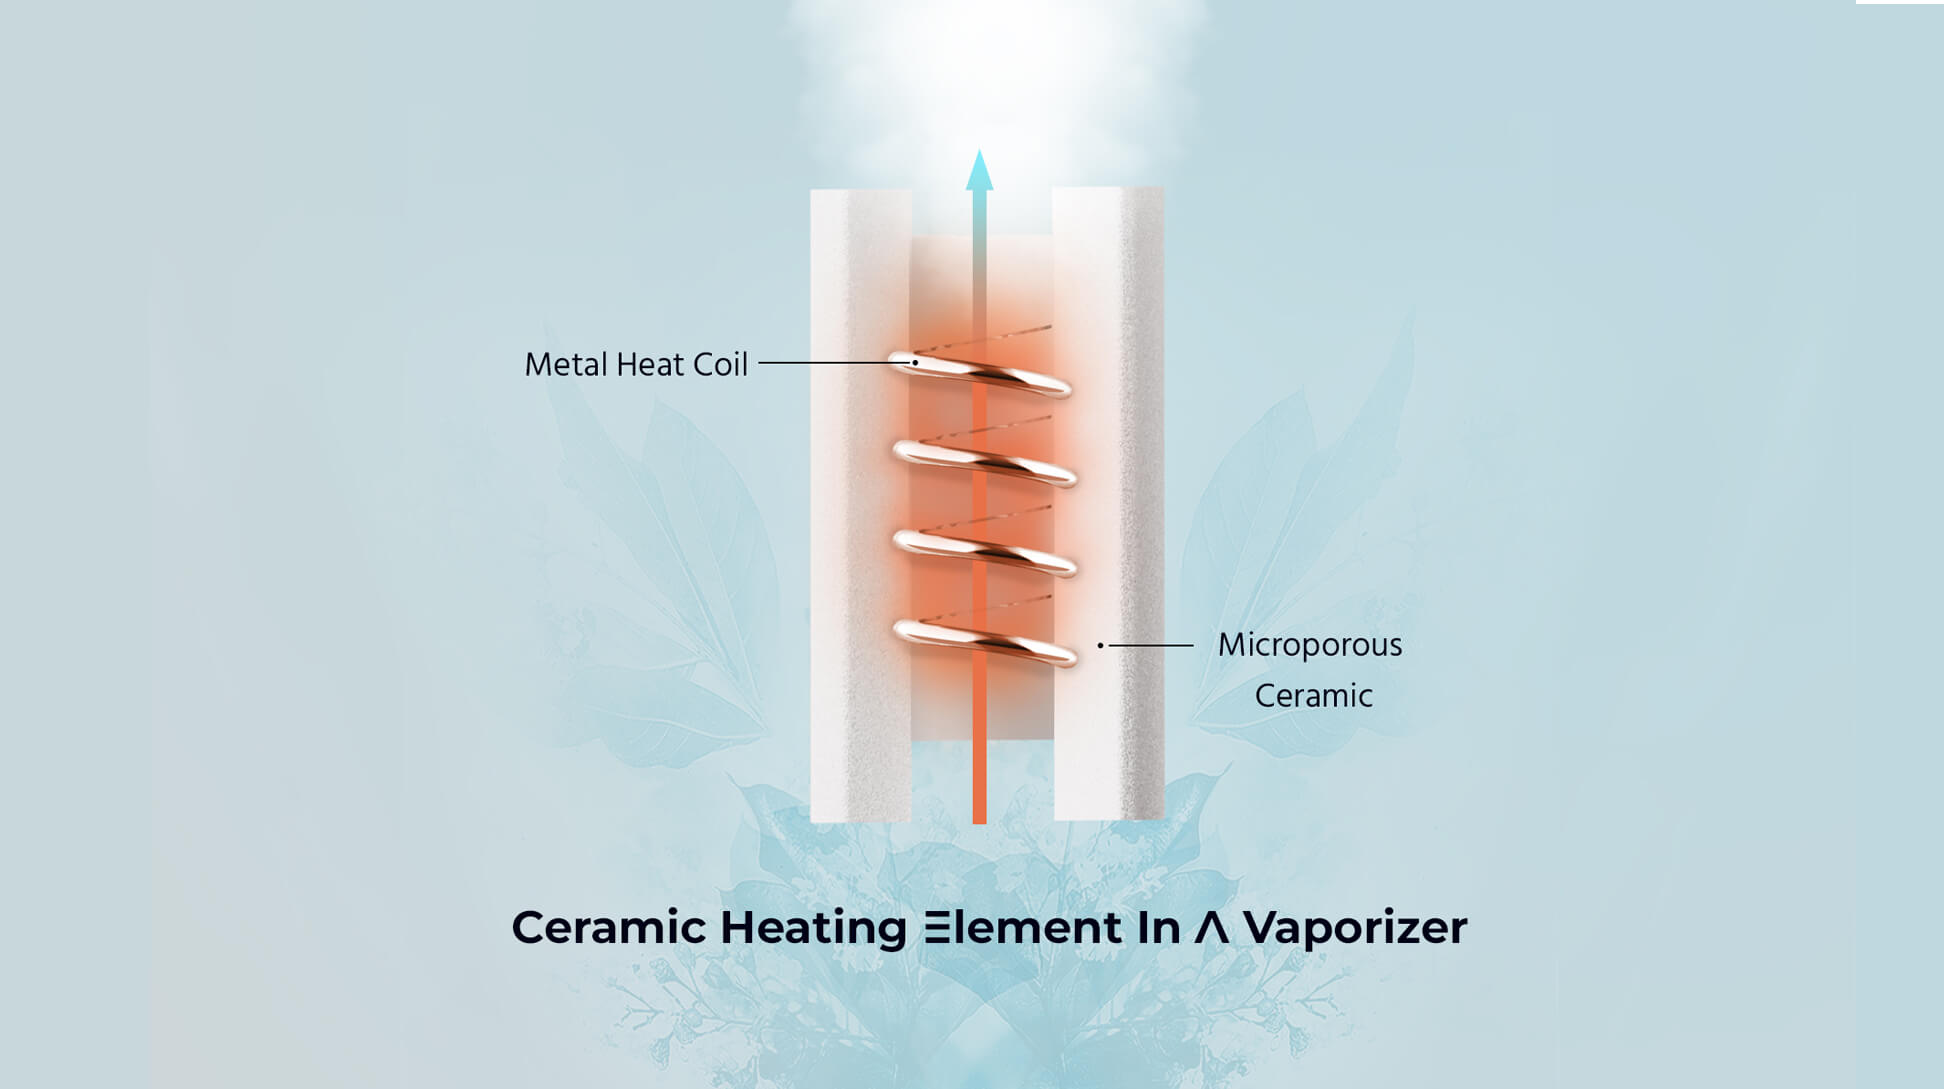 Ceramic heating element